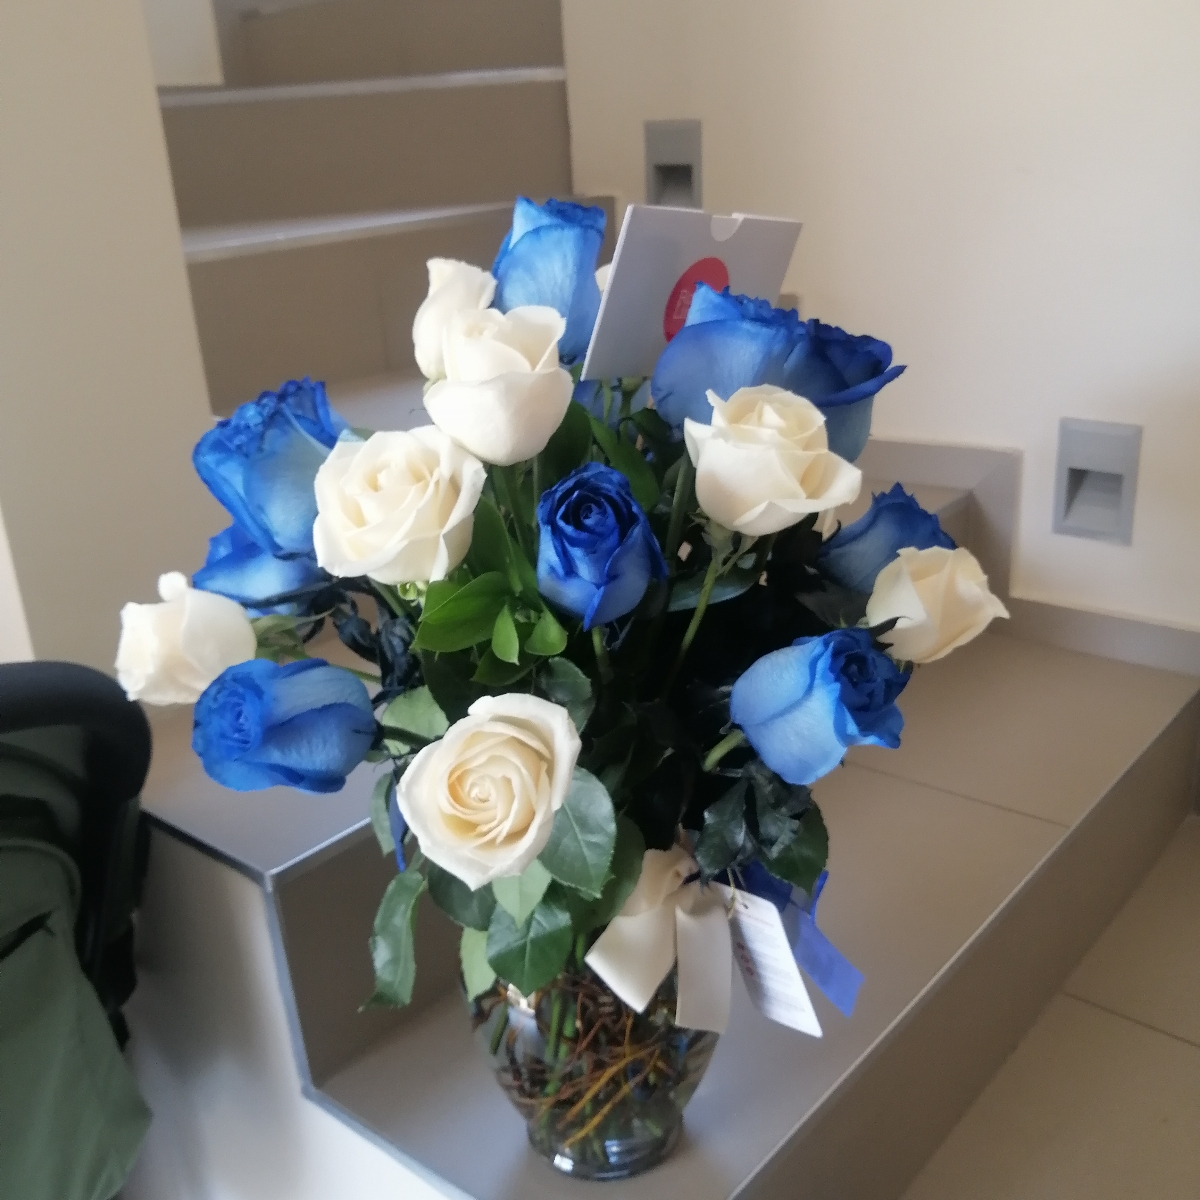 Arreglo floral en florero ánfora con mix de 24 rosas blancas y azules - Pedido 243163